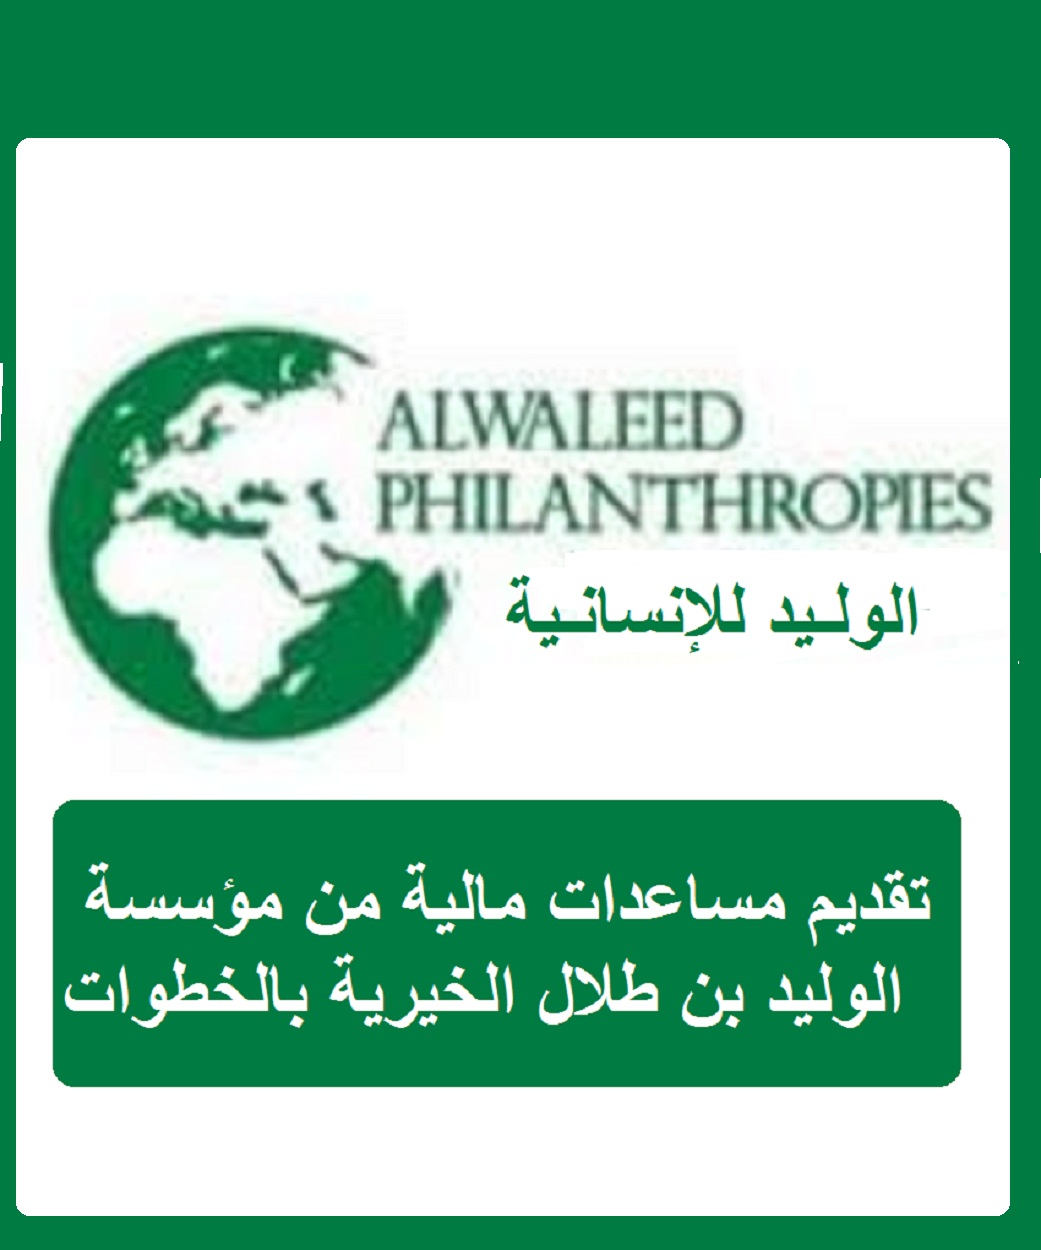 تقديم مساعدات مالية من مؤسسة الوليد بن طلال الخيرية بالخطوات ورابط الدخول